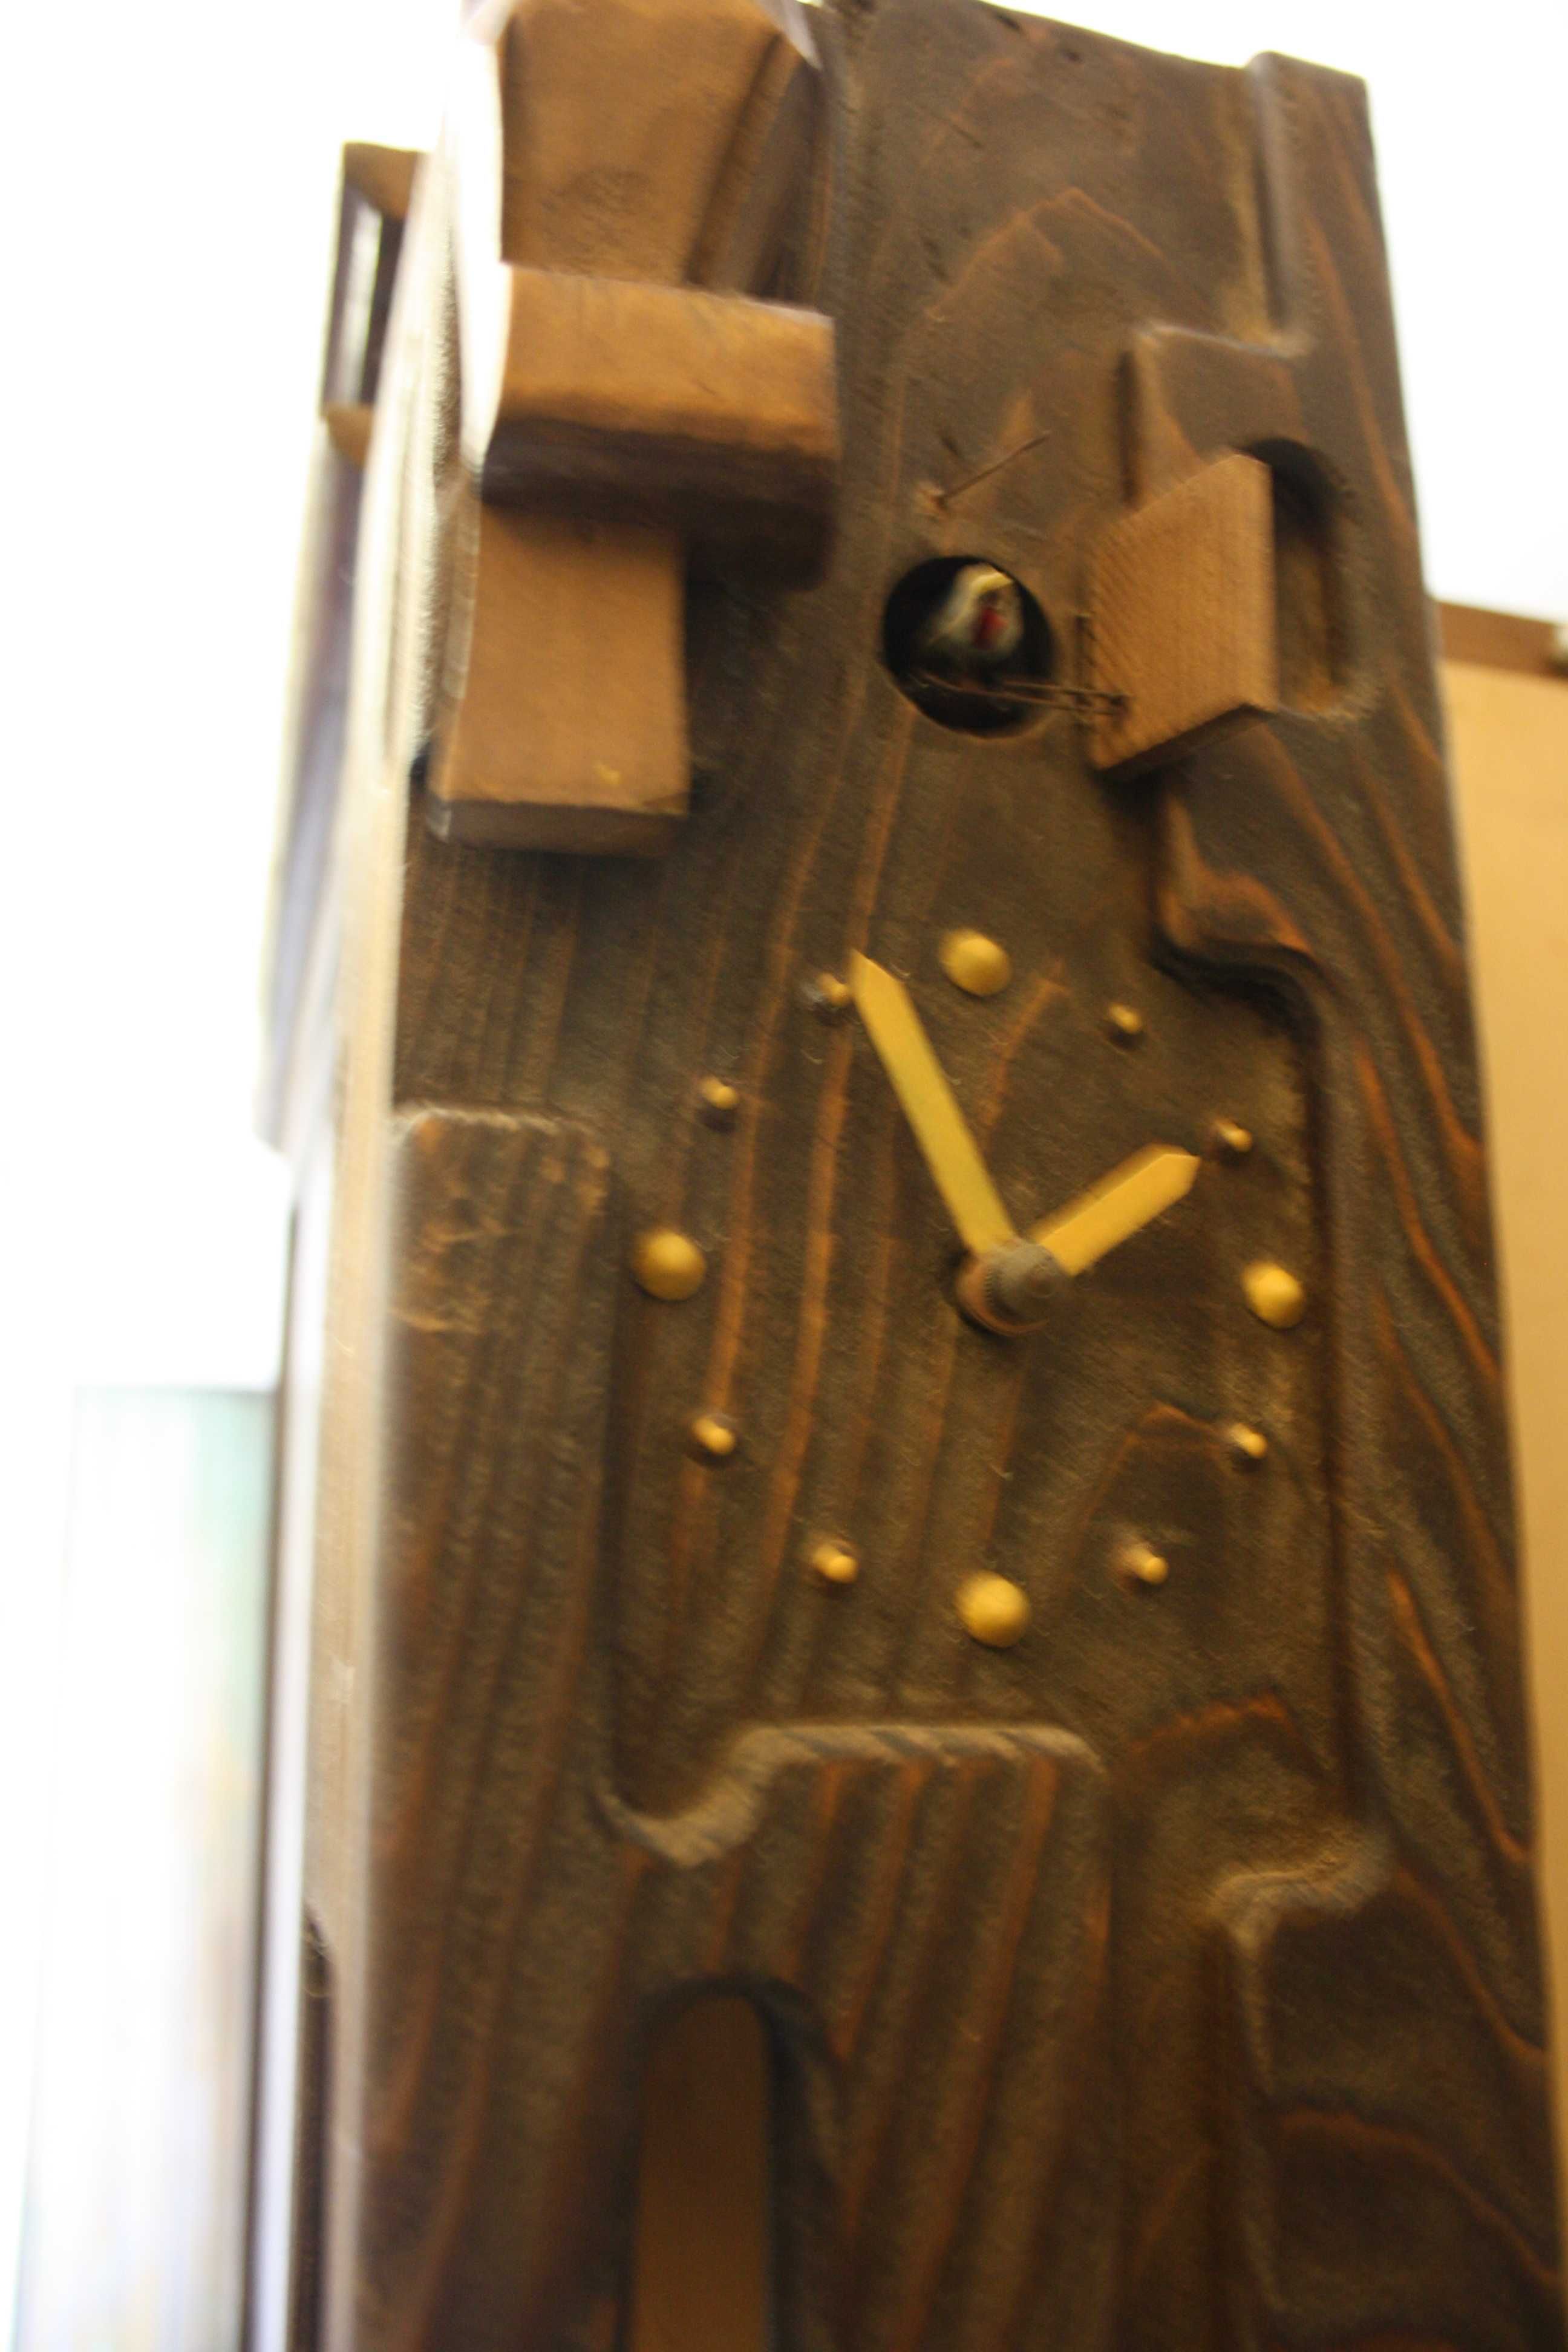 Relógio de Cuco - Em madeira - fabrico alemão